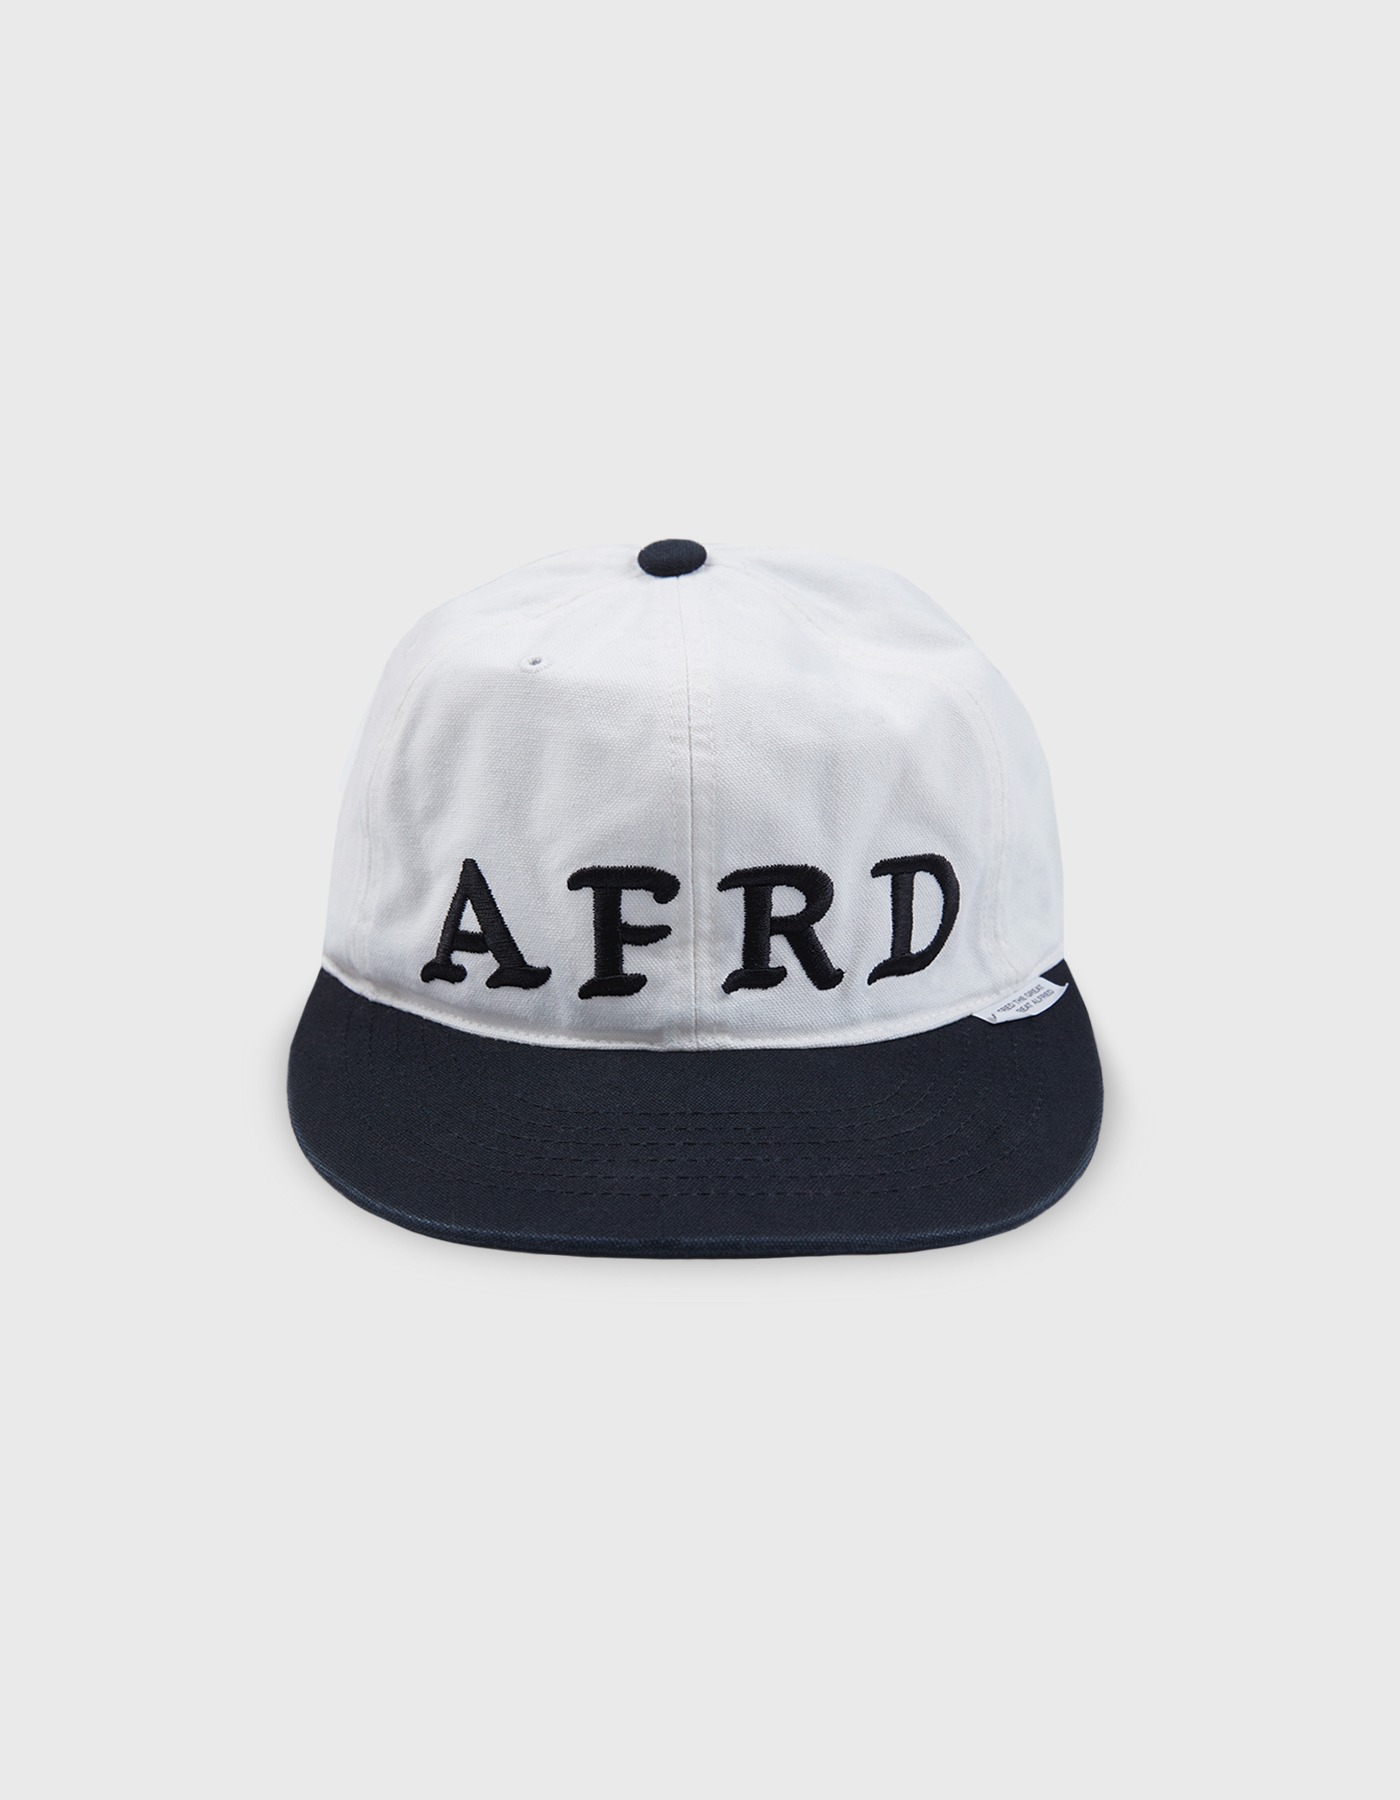 AFRD CAP / White-Black